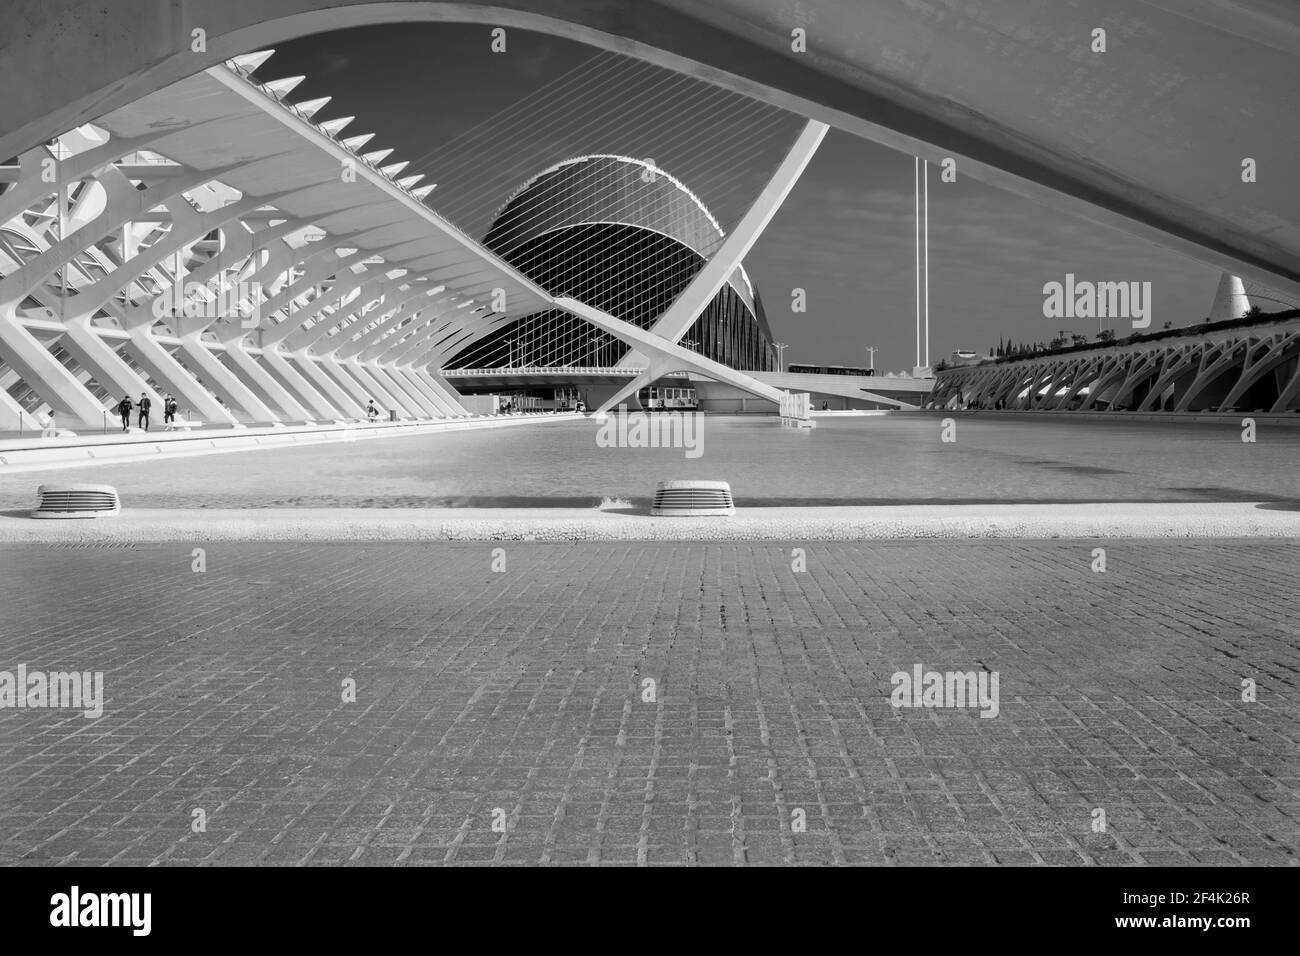 Les géométries harmonieuses du complexe architectural appelé Cité des Arts et des Sciences, situé dans la ville de Valence, Espagne. Image en noir et blanc Banque D'Images